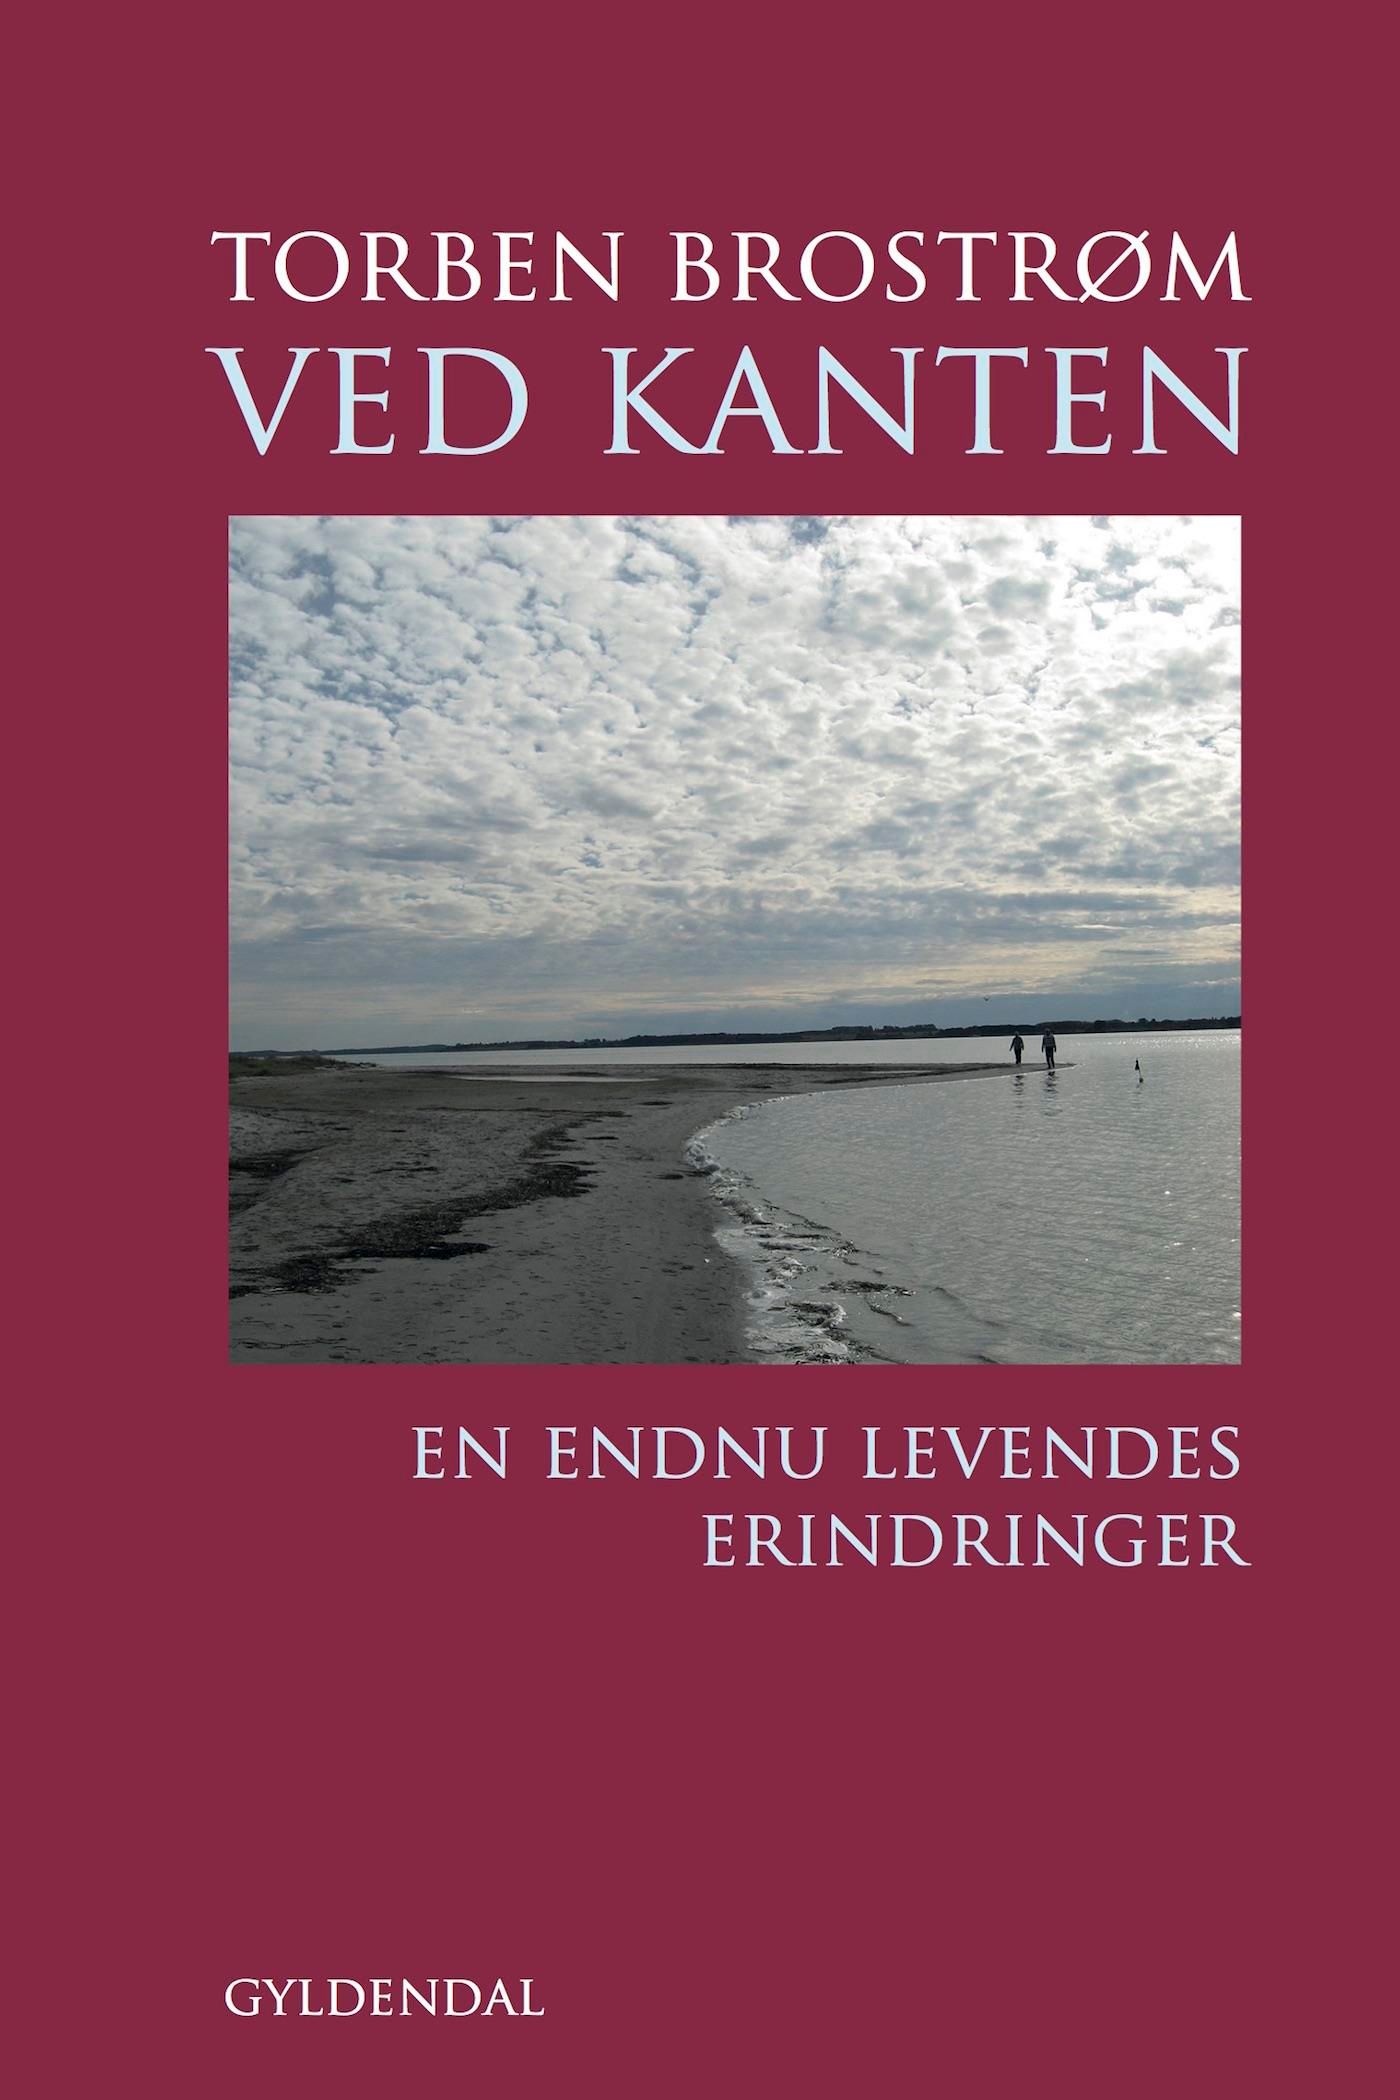 Ved kanten, e-bog af Torben Brostrøm